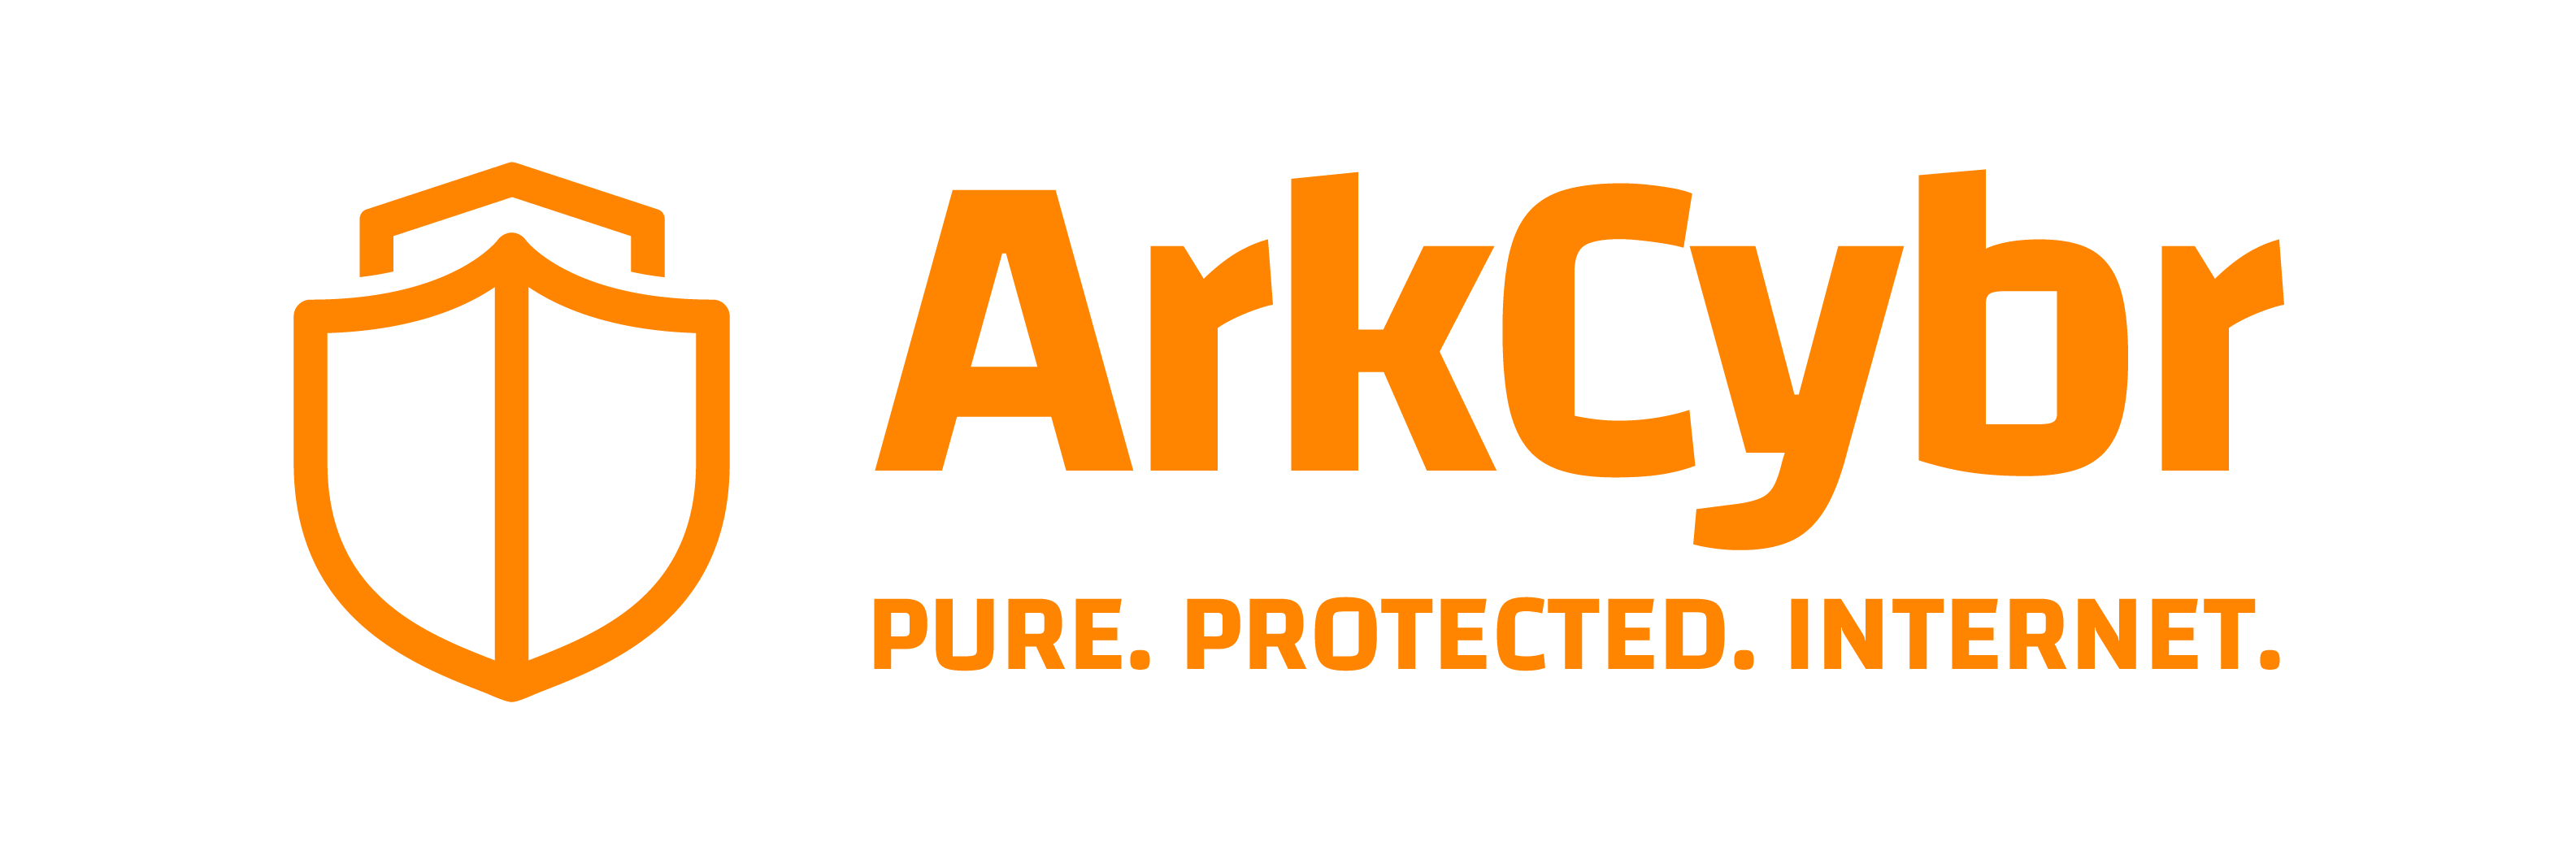 ArkCybr  logo